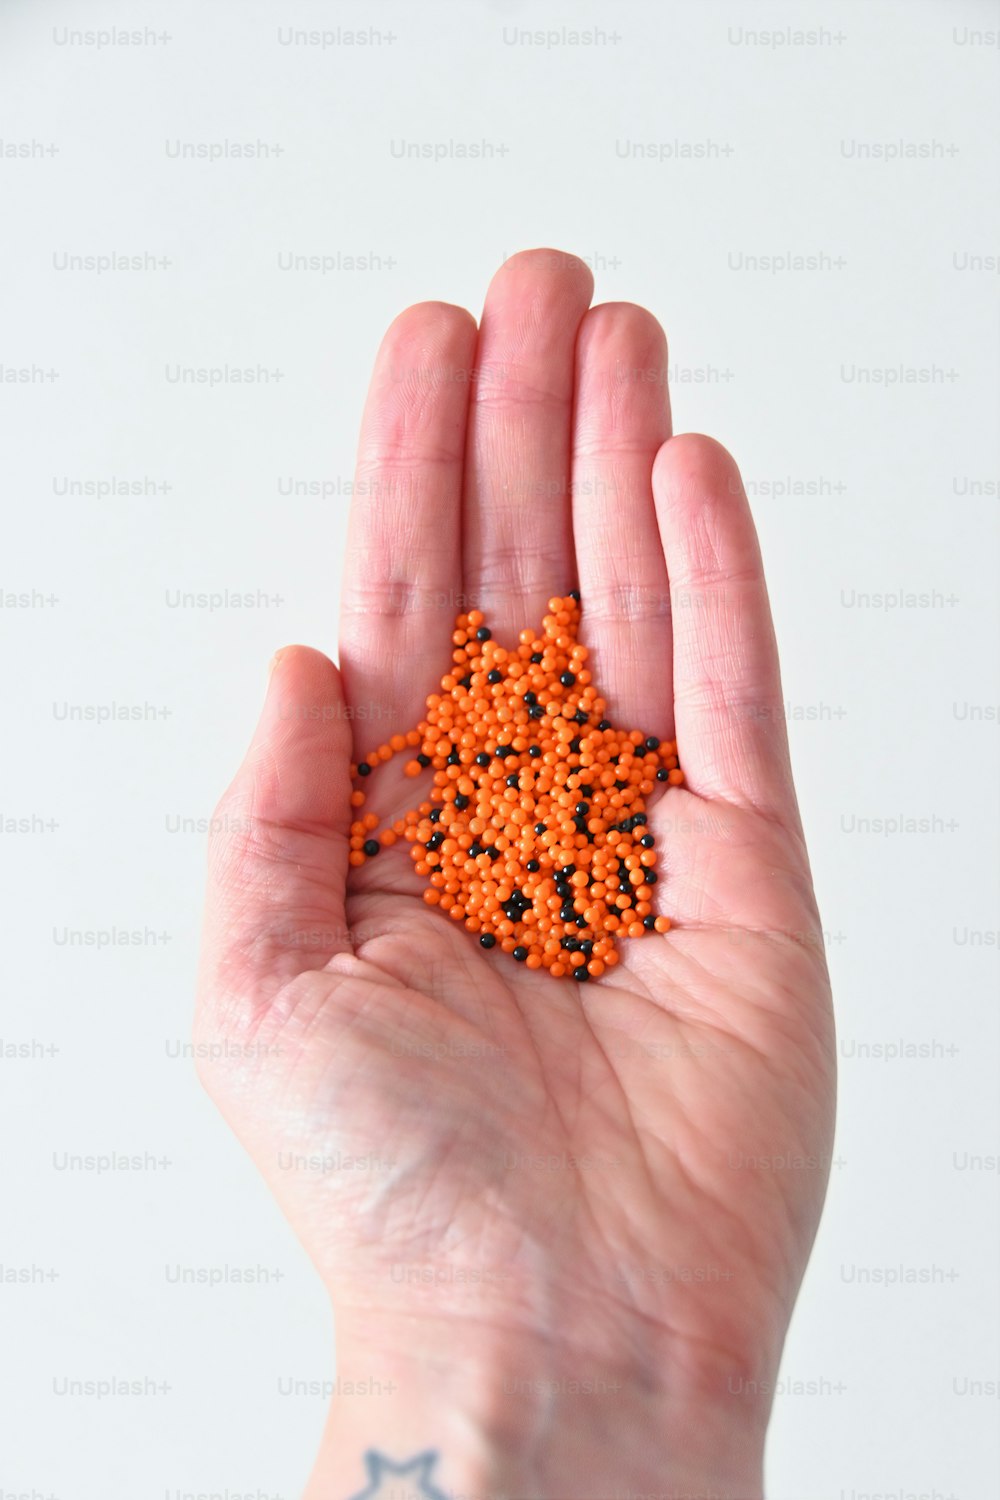 una mano che tiene un piccolo oggetto arancione nel palmo della mano